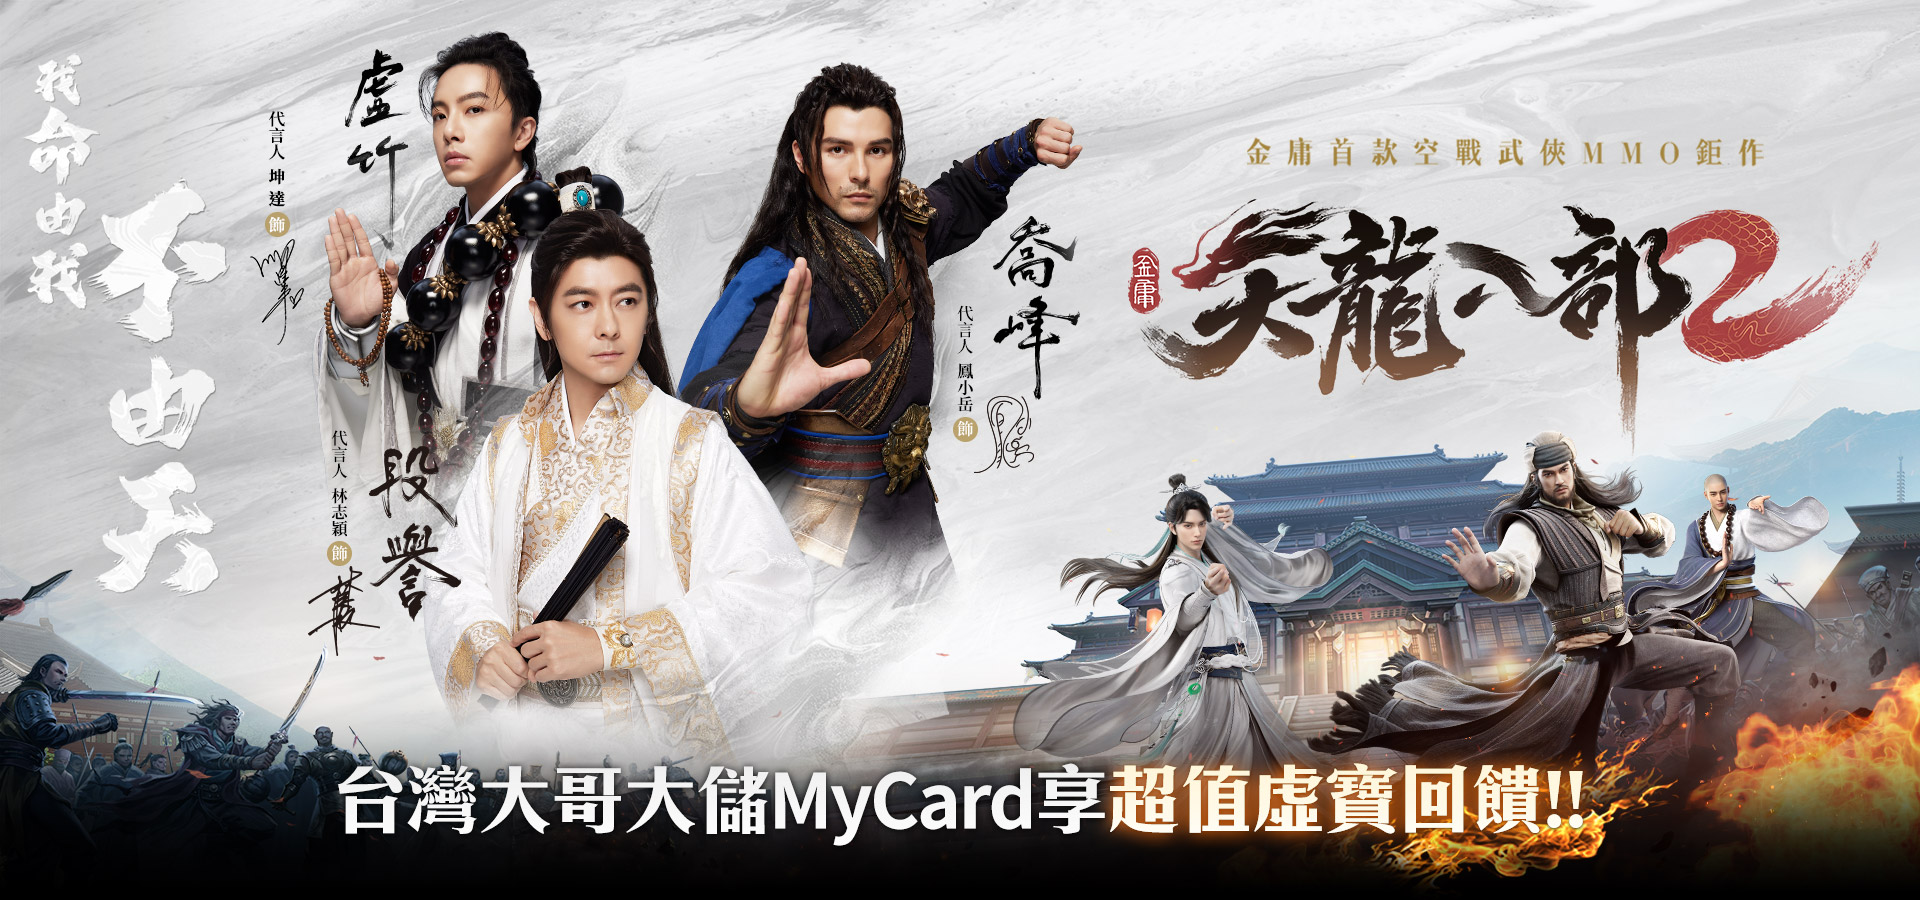   《天龍八部2》MyCard儲值享超值好禮回饋 | 台灣大哥大